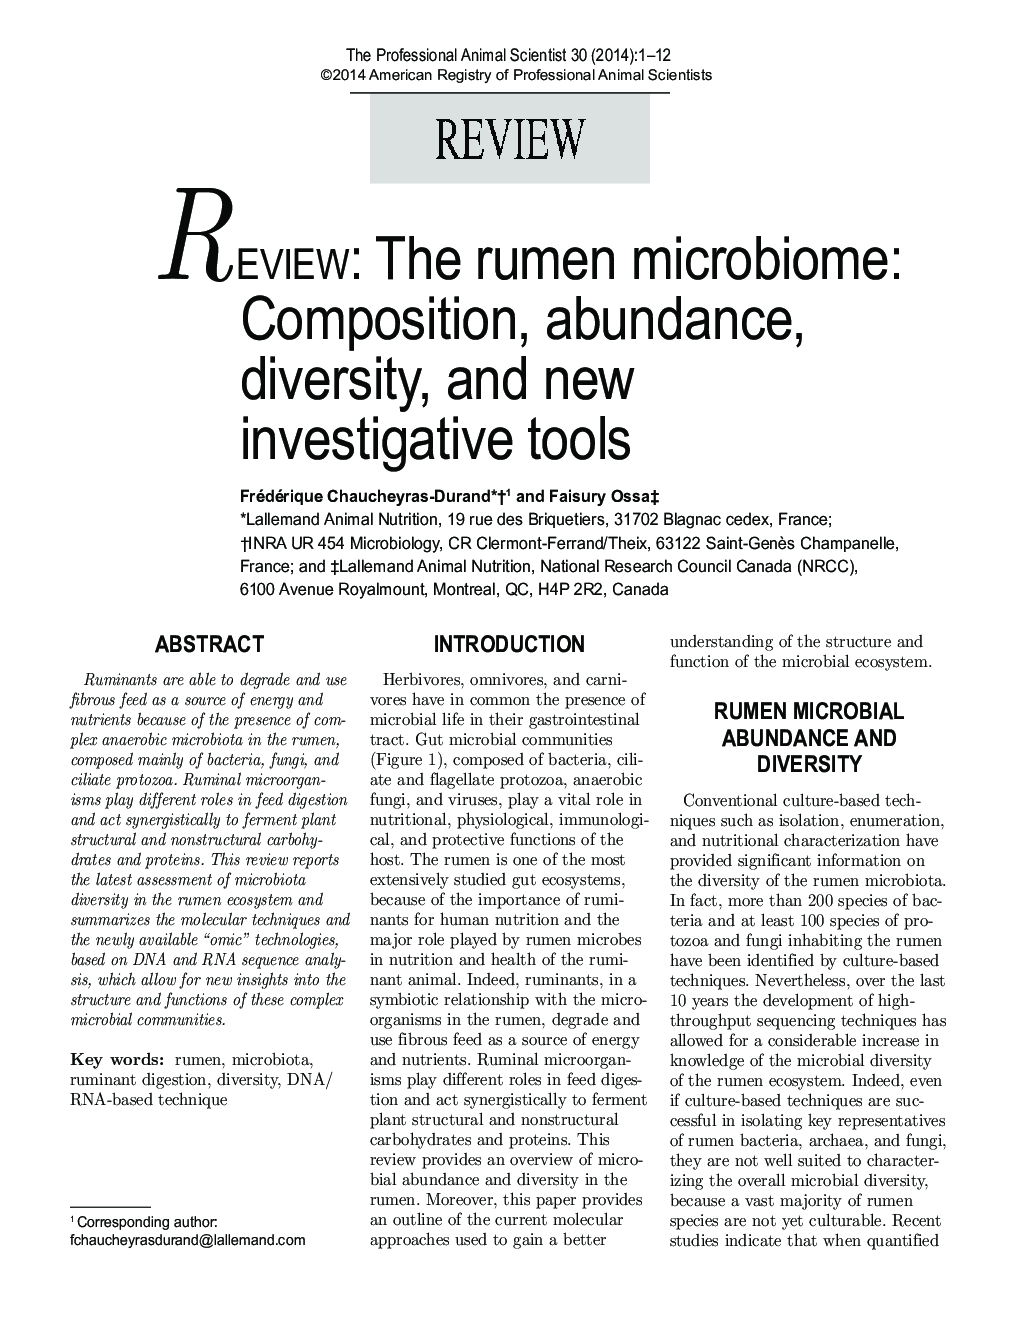 بررسی: میکروبیوم شکمبه: ترکیب، فراوانی، تنوع و ابزار تحقیقاتی جدید 